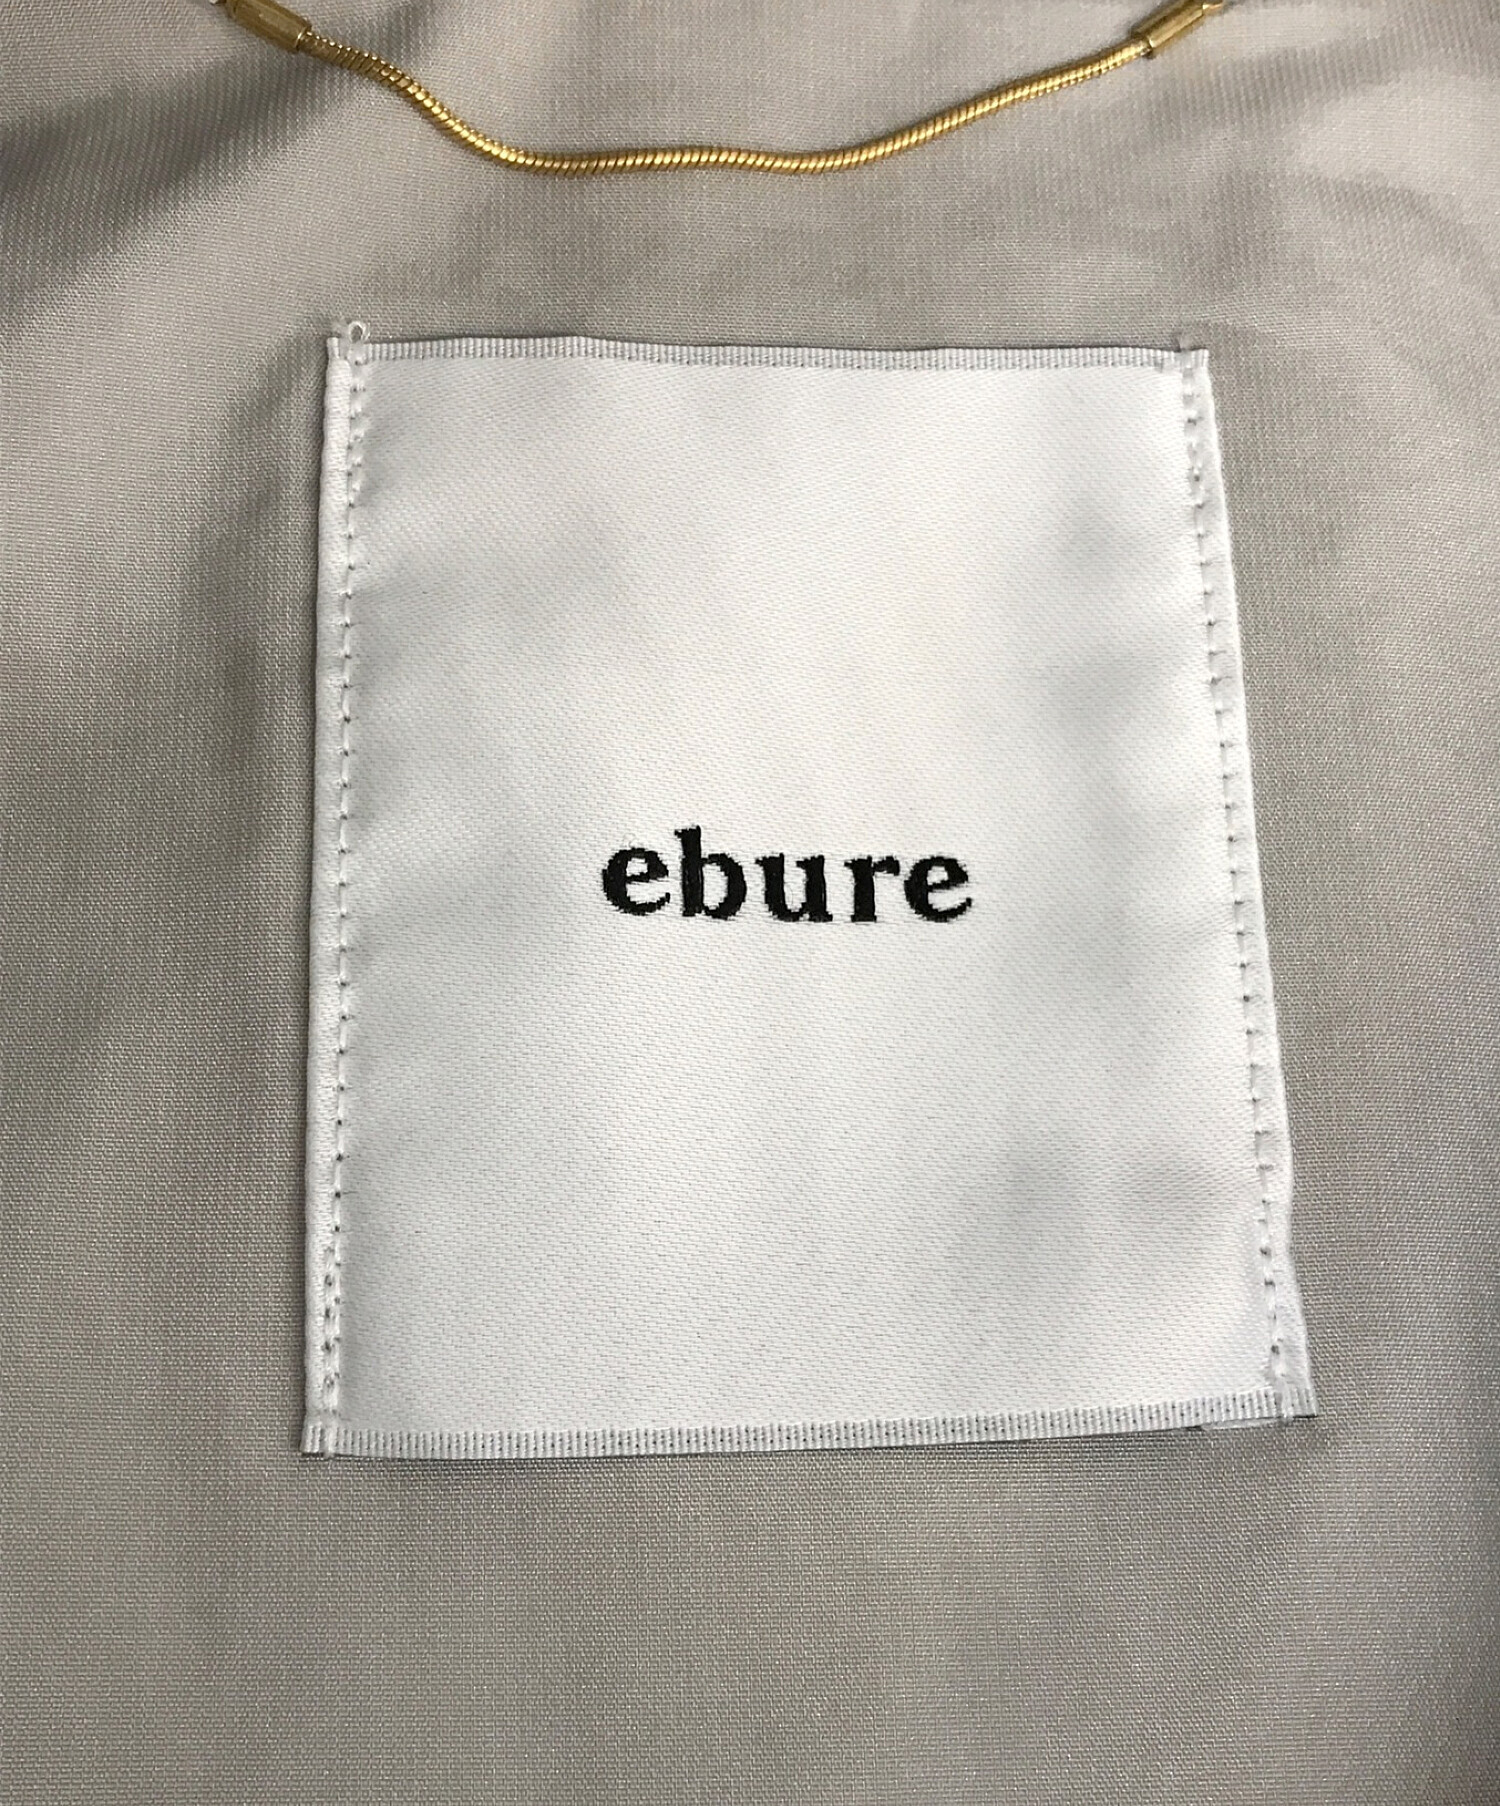 EBURE (エブール) シルクポリナイロンドルマンスリーブフーデッドコート グレー サイズ:38